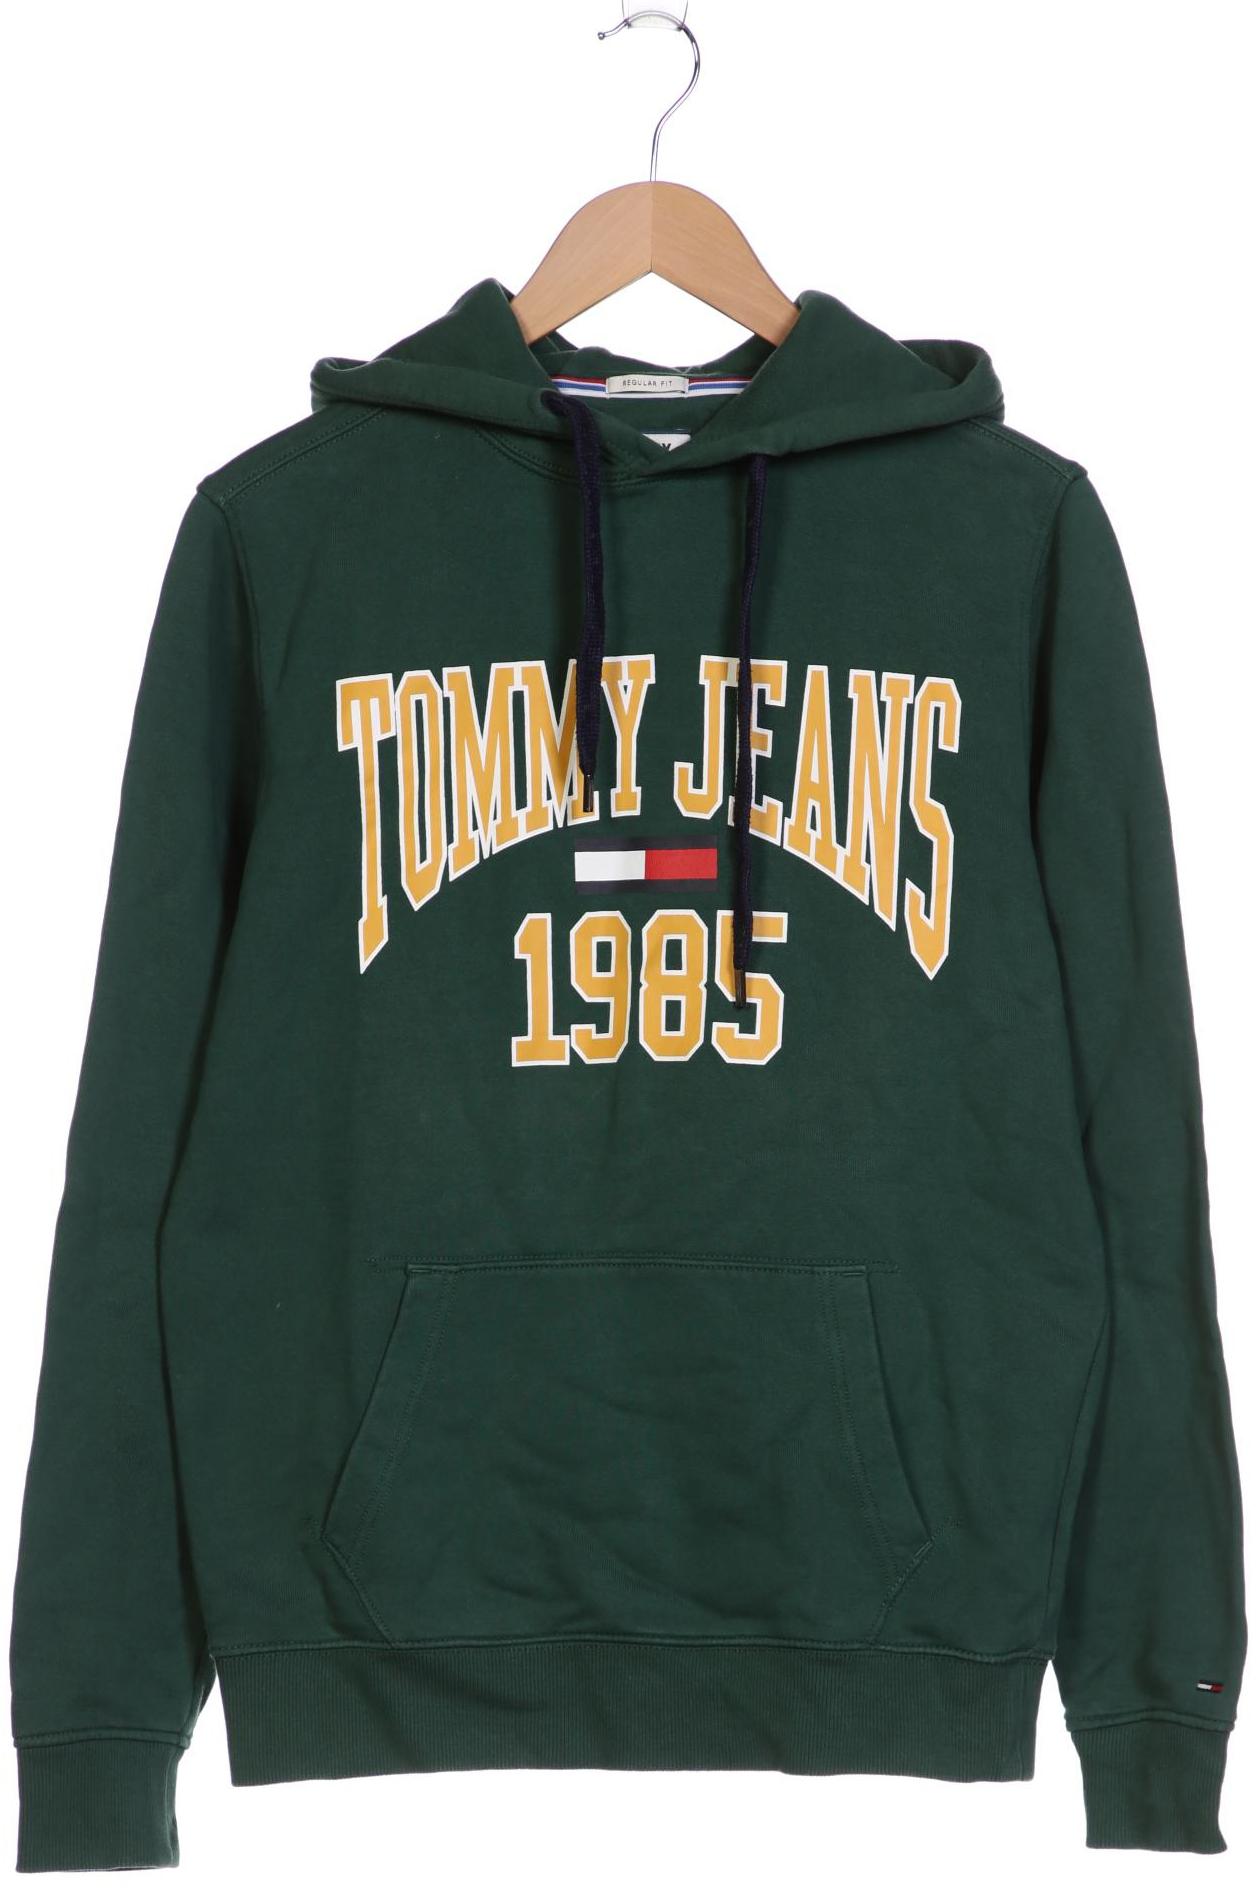 Tommy Jeans Herren Kapuzenpullover, grün von Tommy Jeans